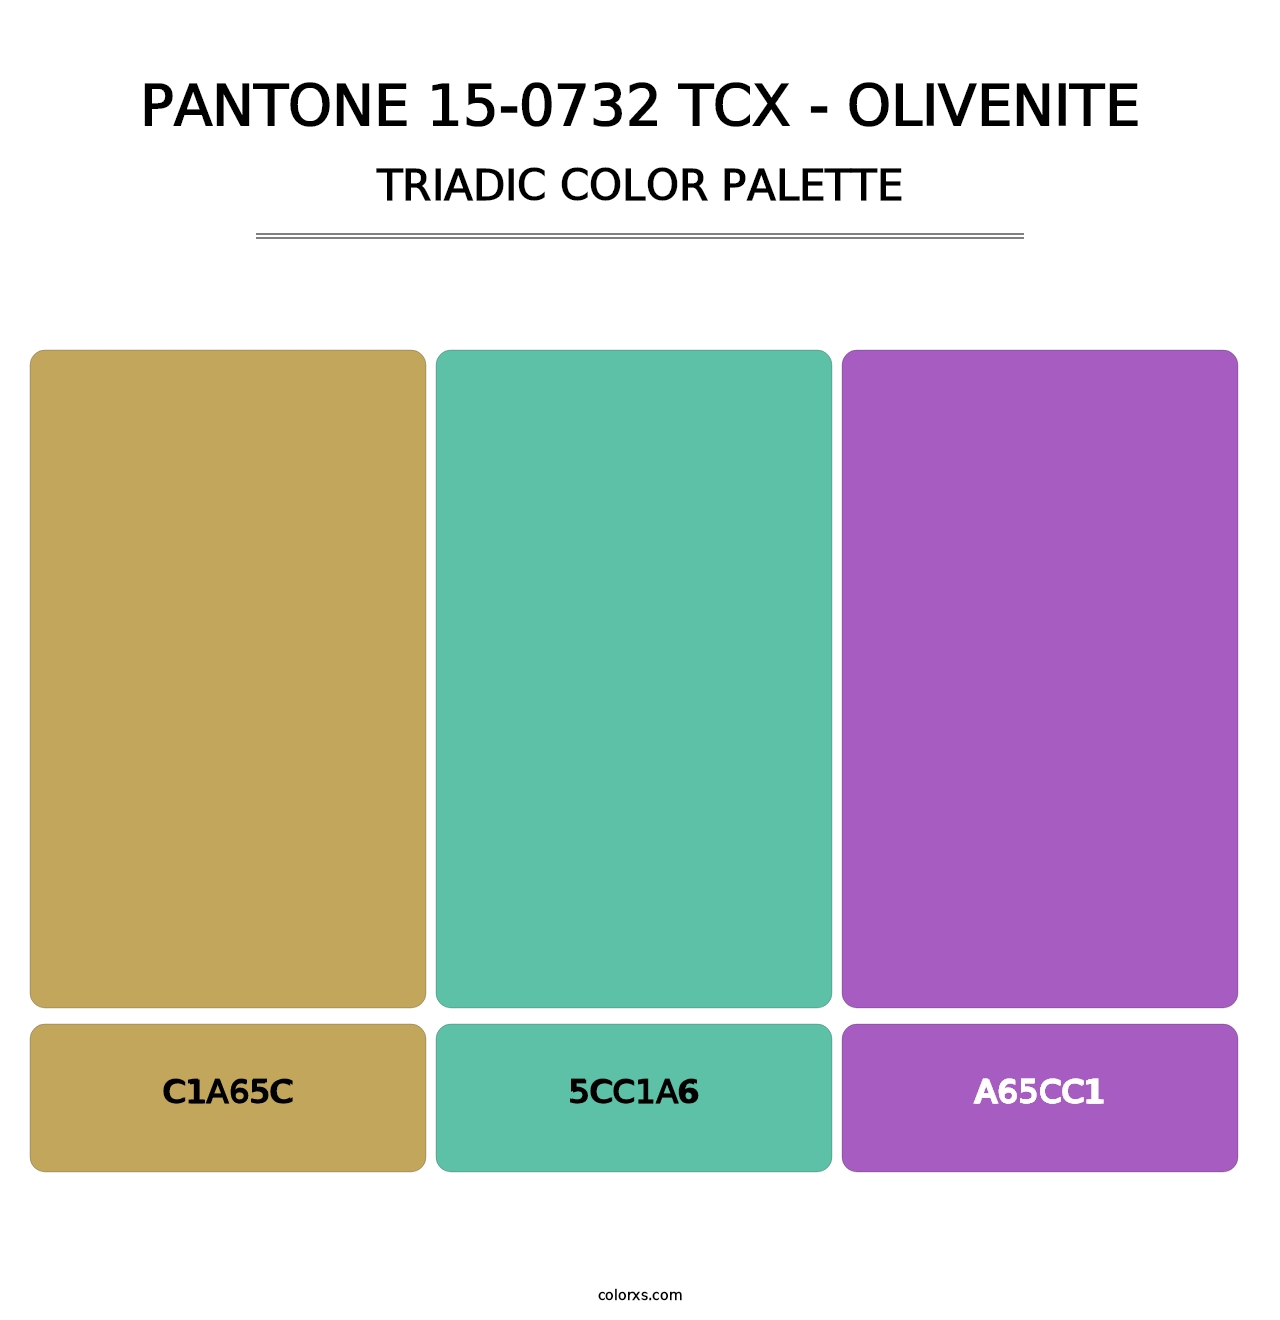 PANTONE 15-0732 TCX - Olivenite - Triadic Color Palette